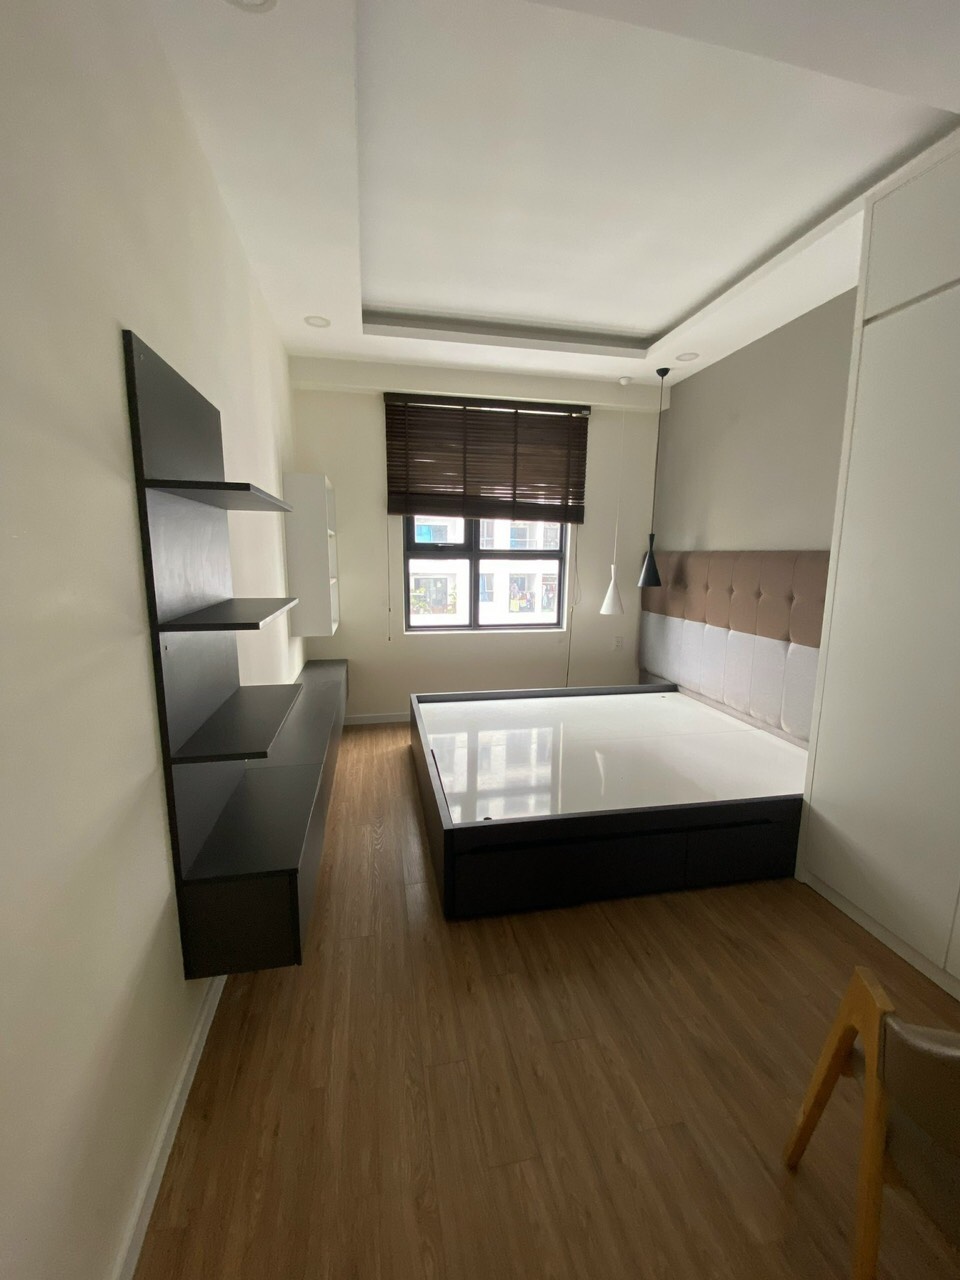 Cho thuê căn hộ M-one P.Tân Kiểng Quận 7,có 3PN-2WC giá 15tr/tháng Full nội thất.LH 0909802822 Trân